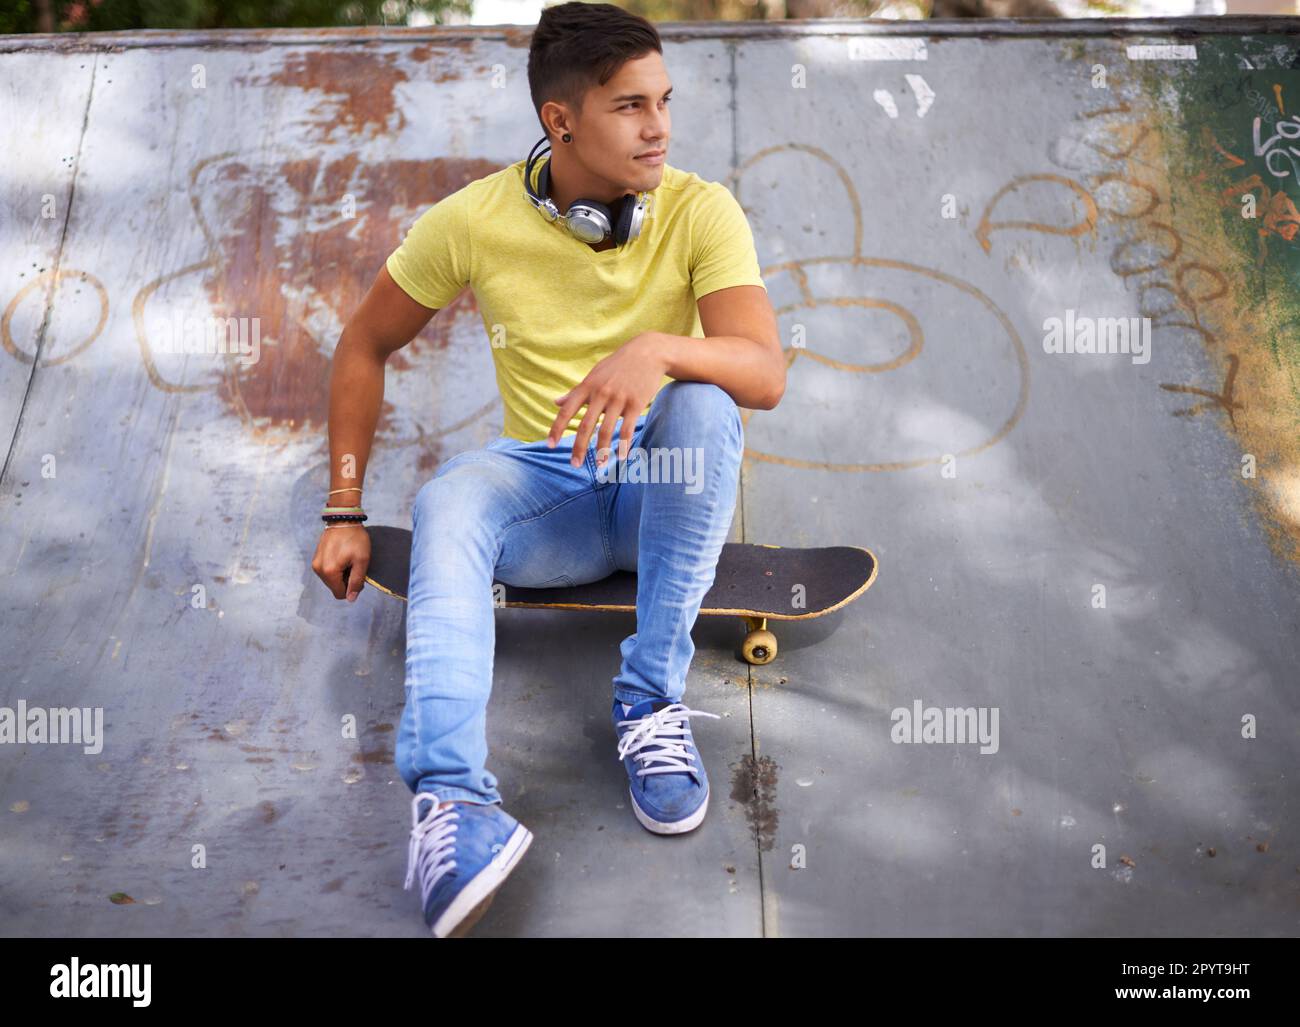 Juste moi et mon conseil. un jeune homme assis sur son skateboard dans un parc de skate. Banque D'Images